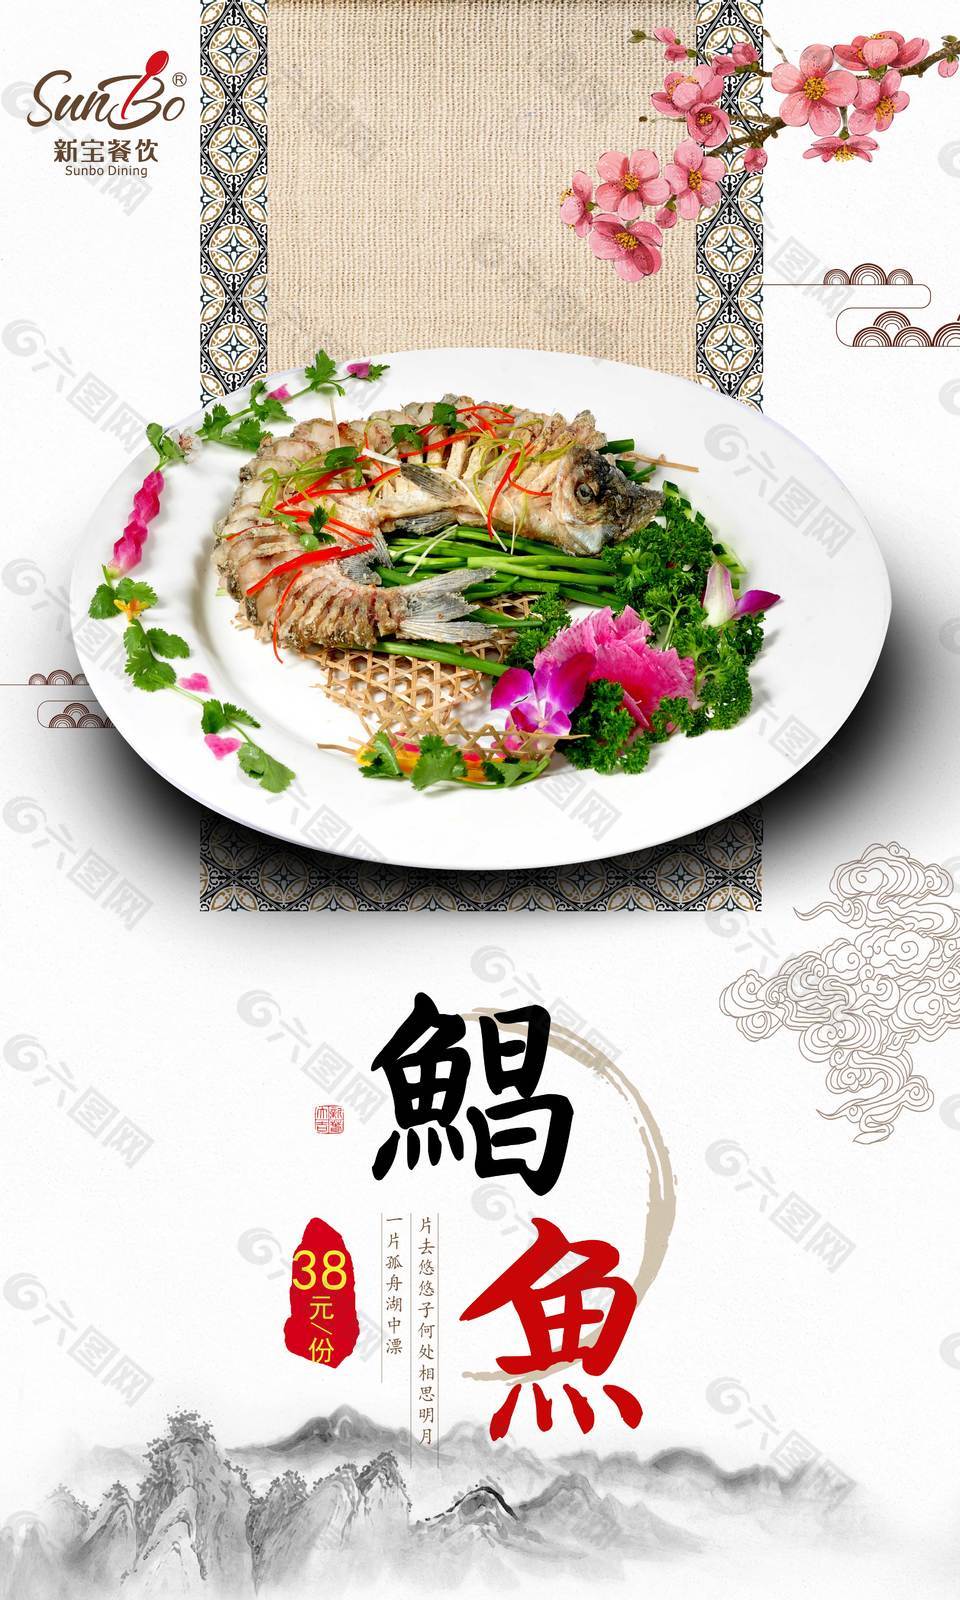 中国传统美食促销海报